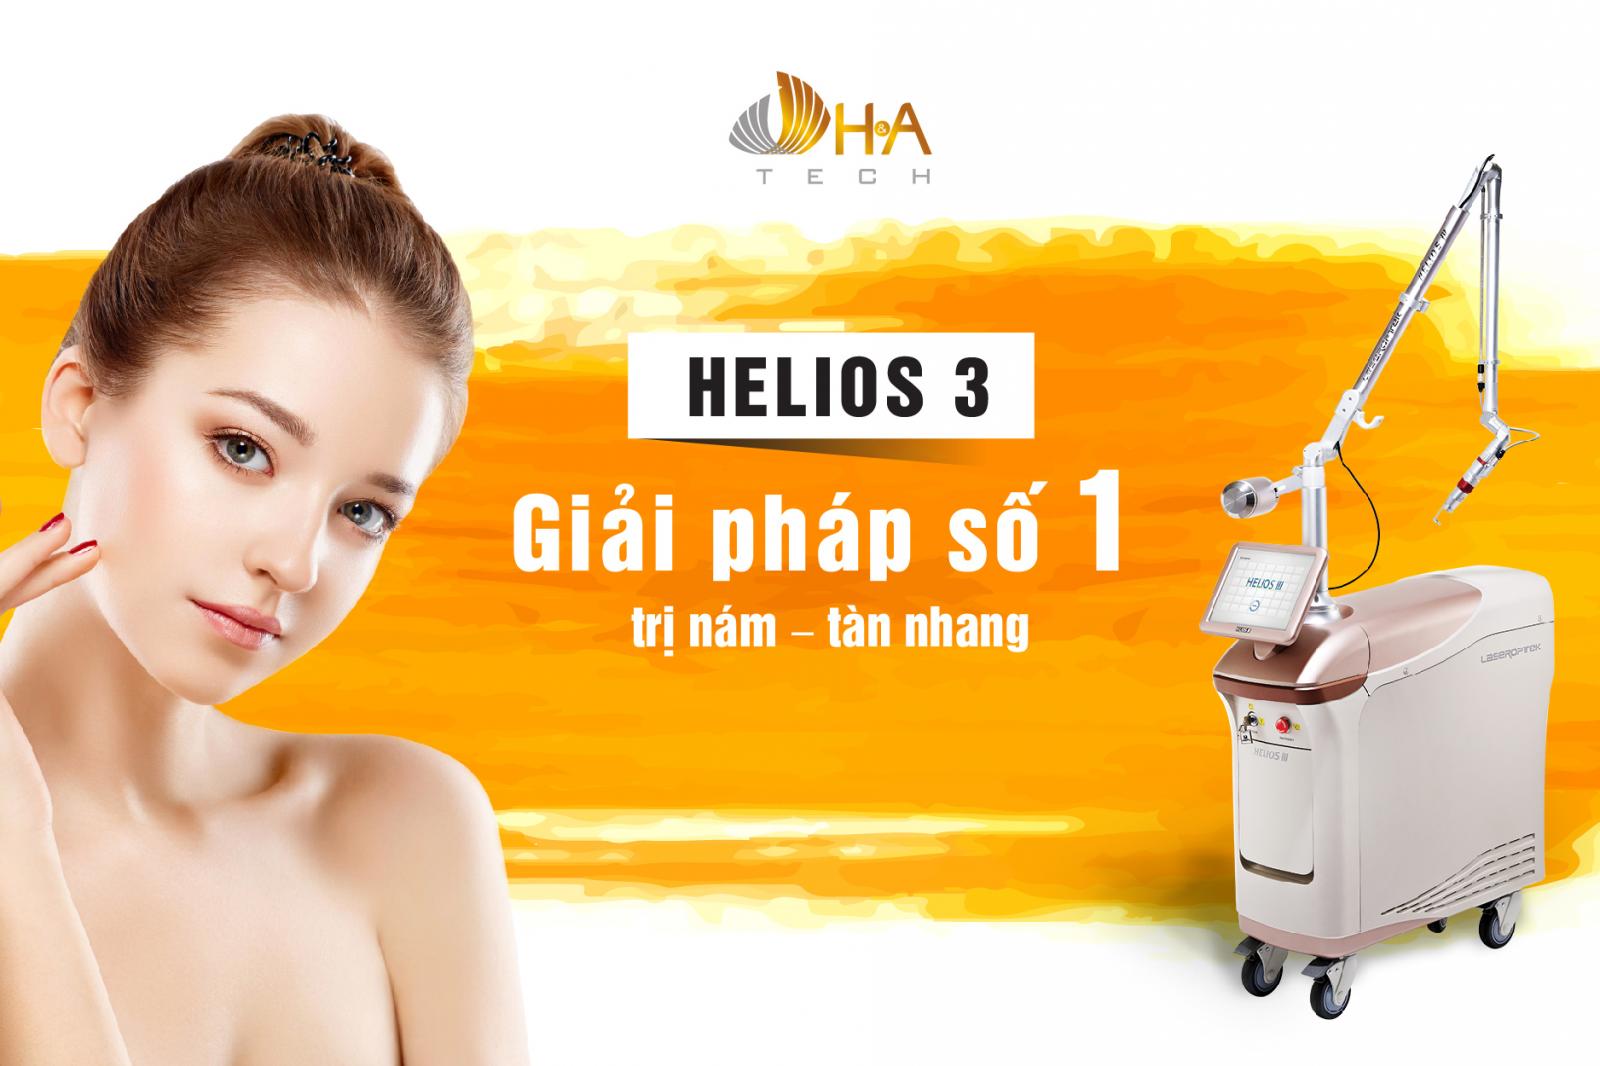 Helios III – Công nghệ Laser 4G dẫn đầu trong ngành thẩm mỹ tại Việt Nam.